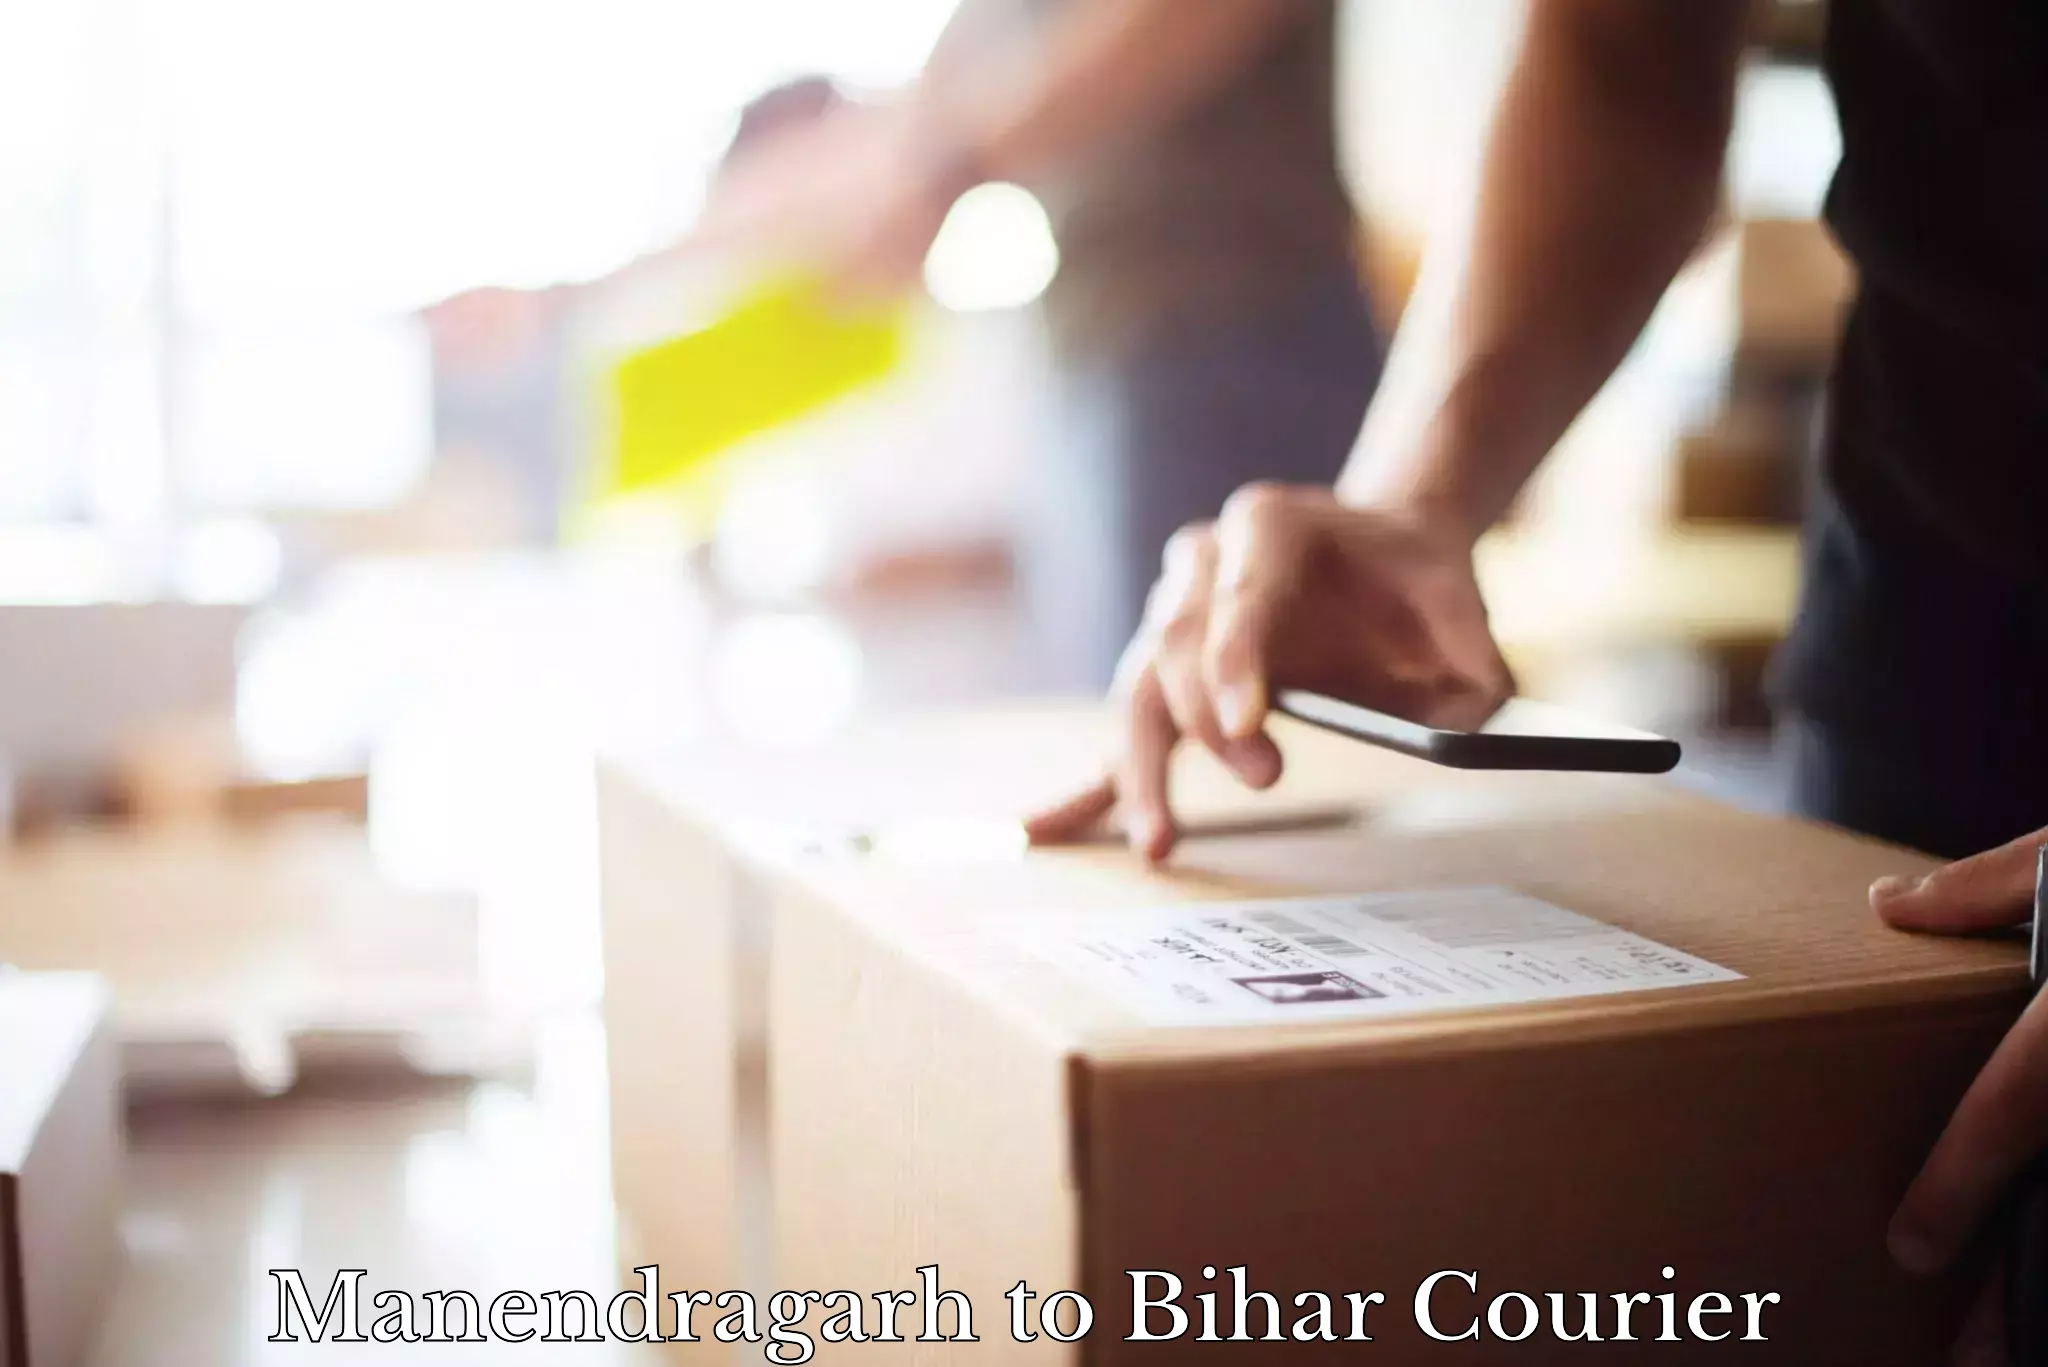 Courier service innovation Manendragarh to Bhagalpur